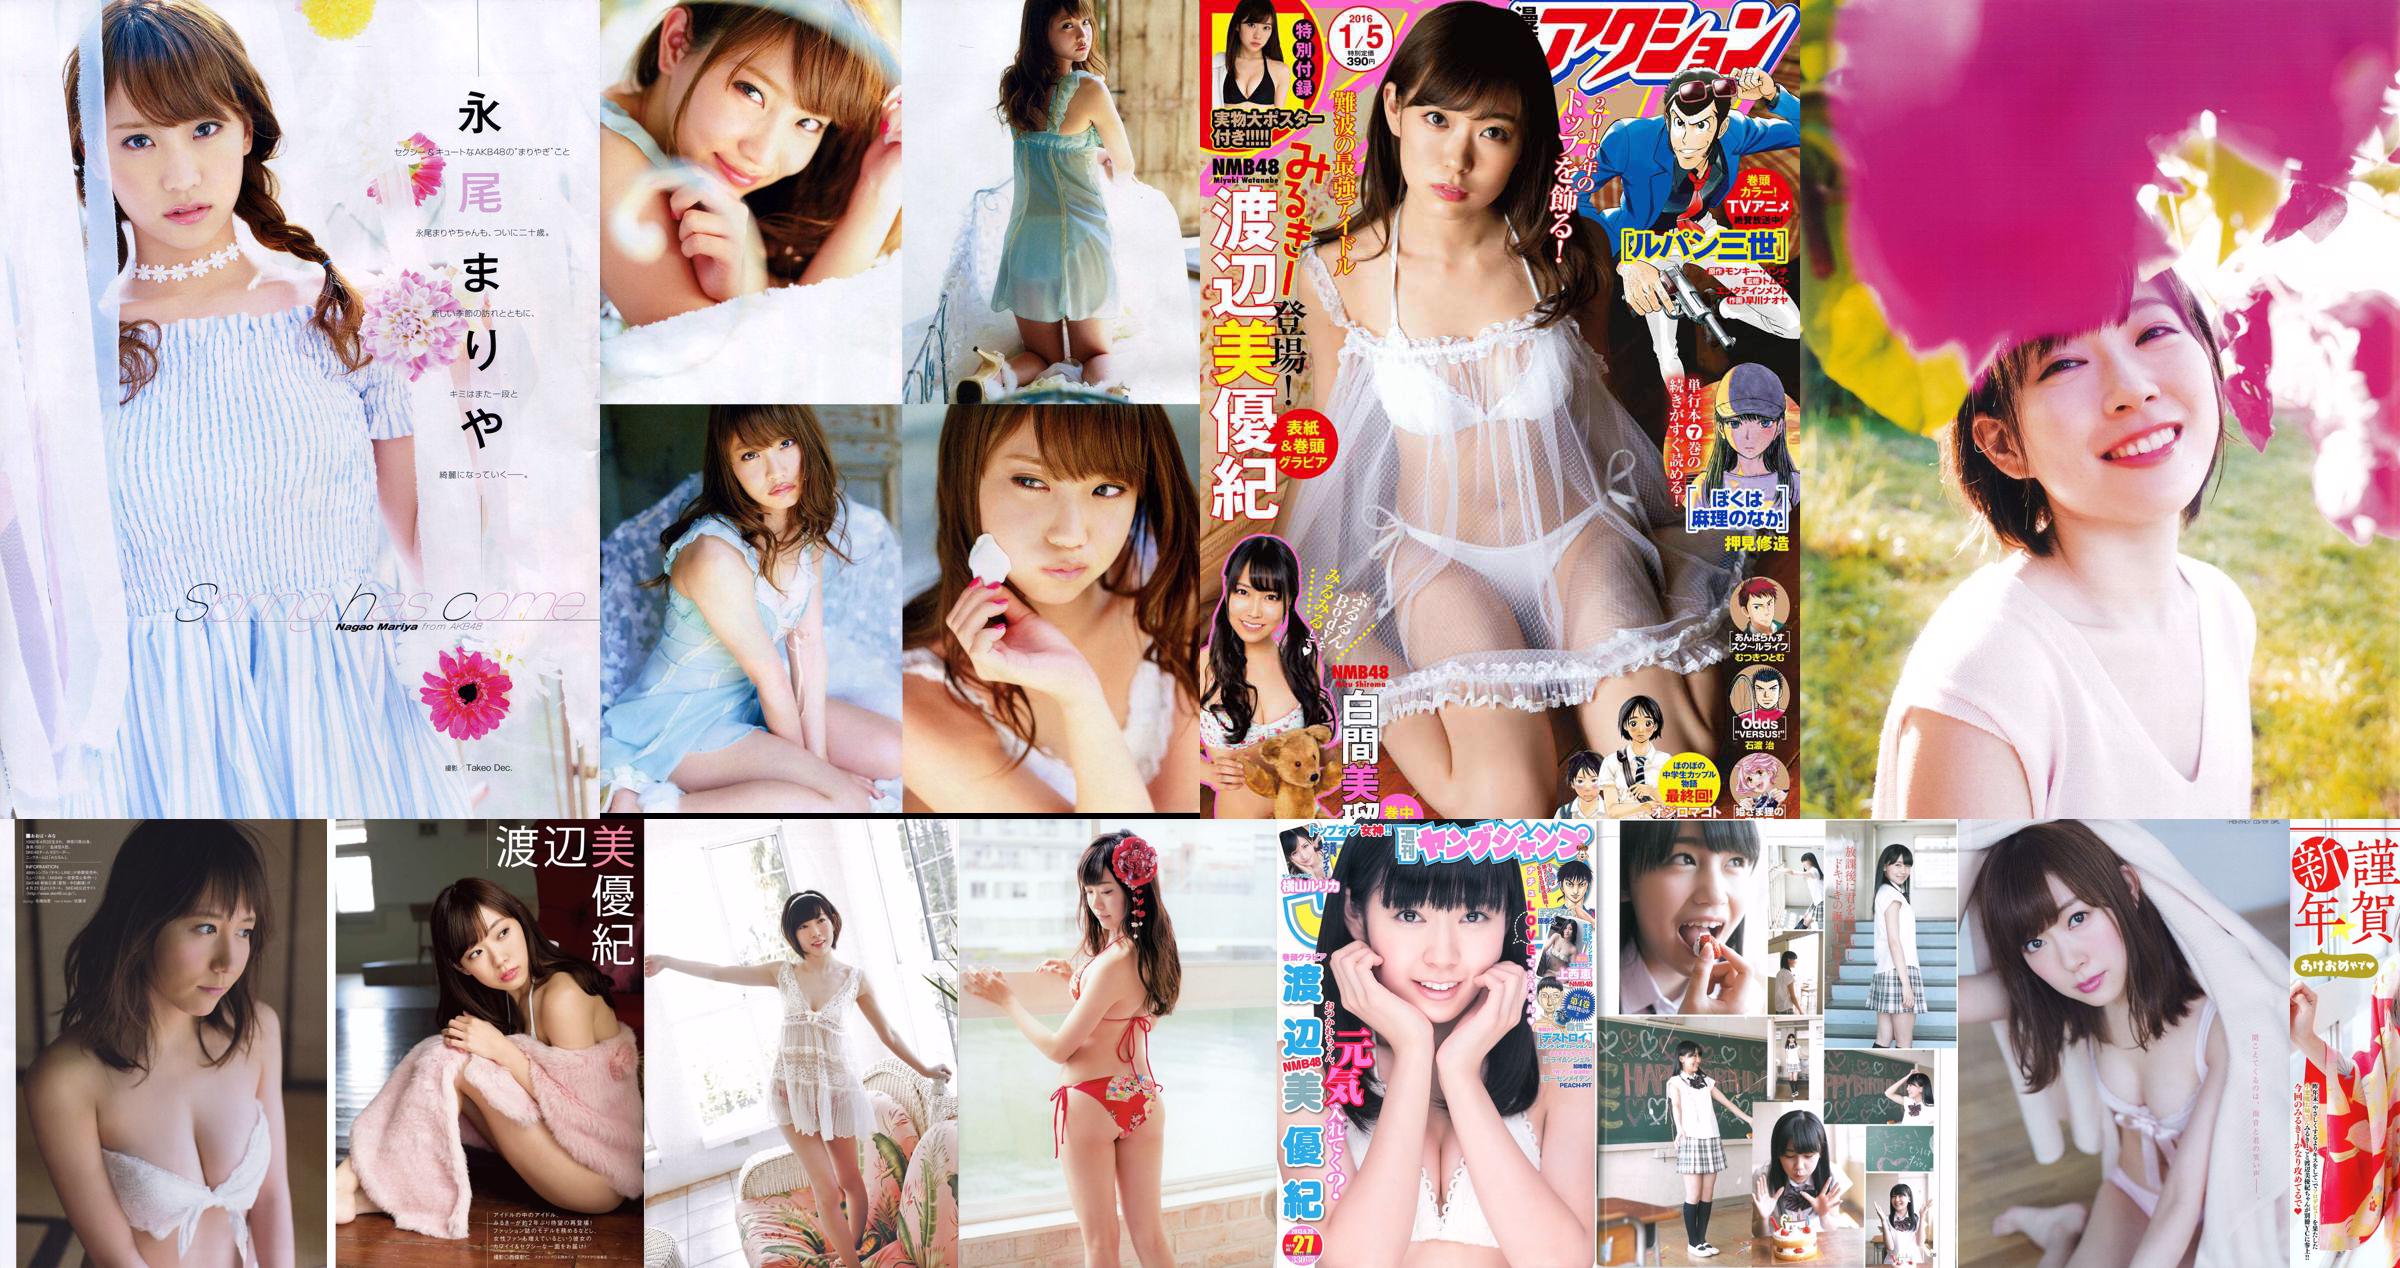 [Young Champion Extra] Miyuki Watanabe 2015 No.02 Photo Magazine No.8b6218 Pagina 7